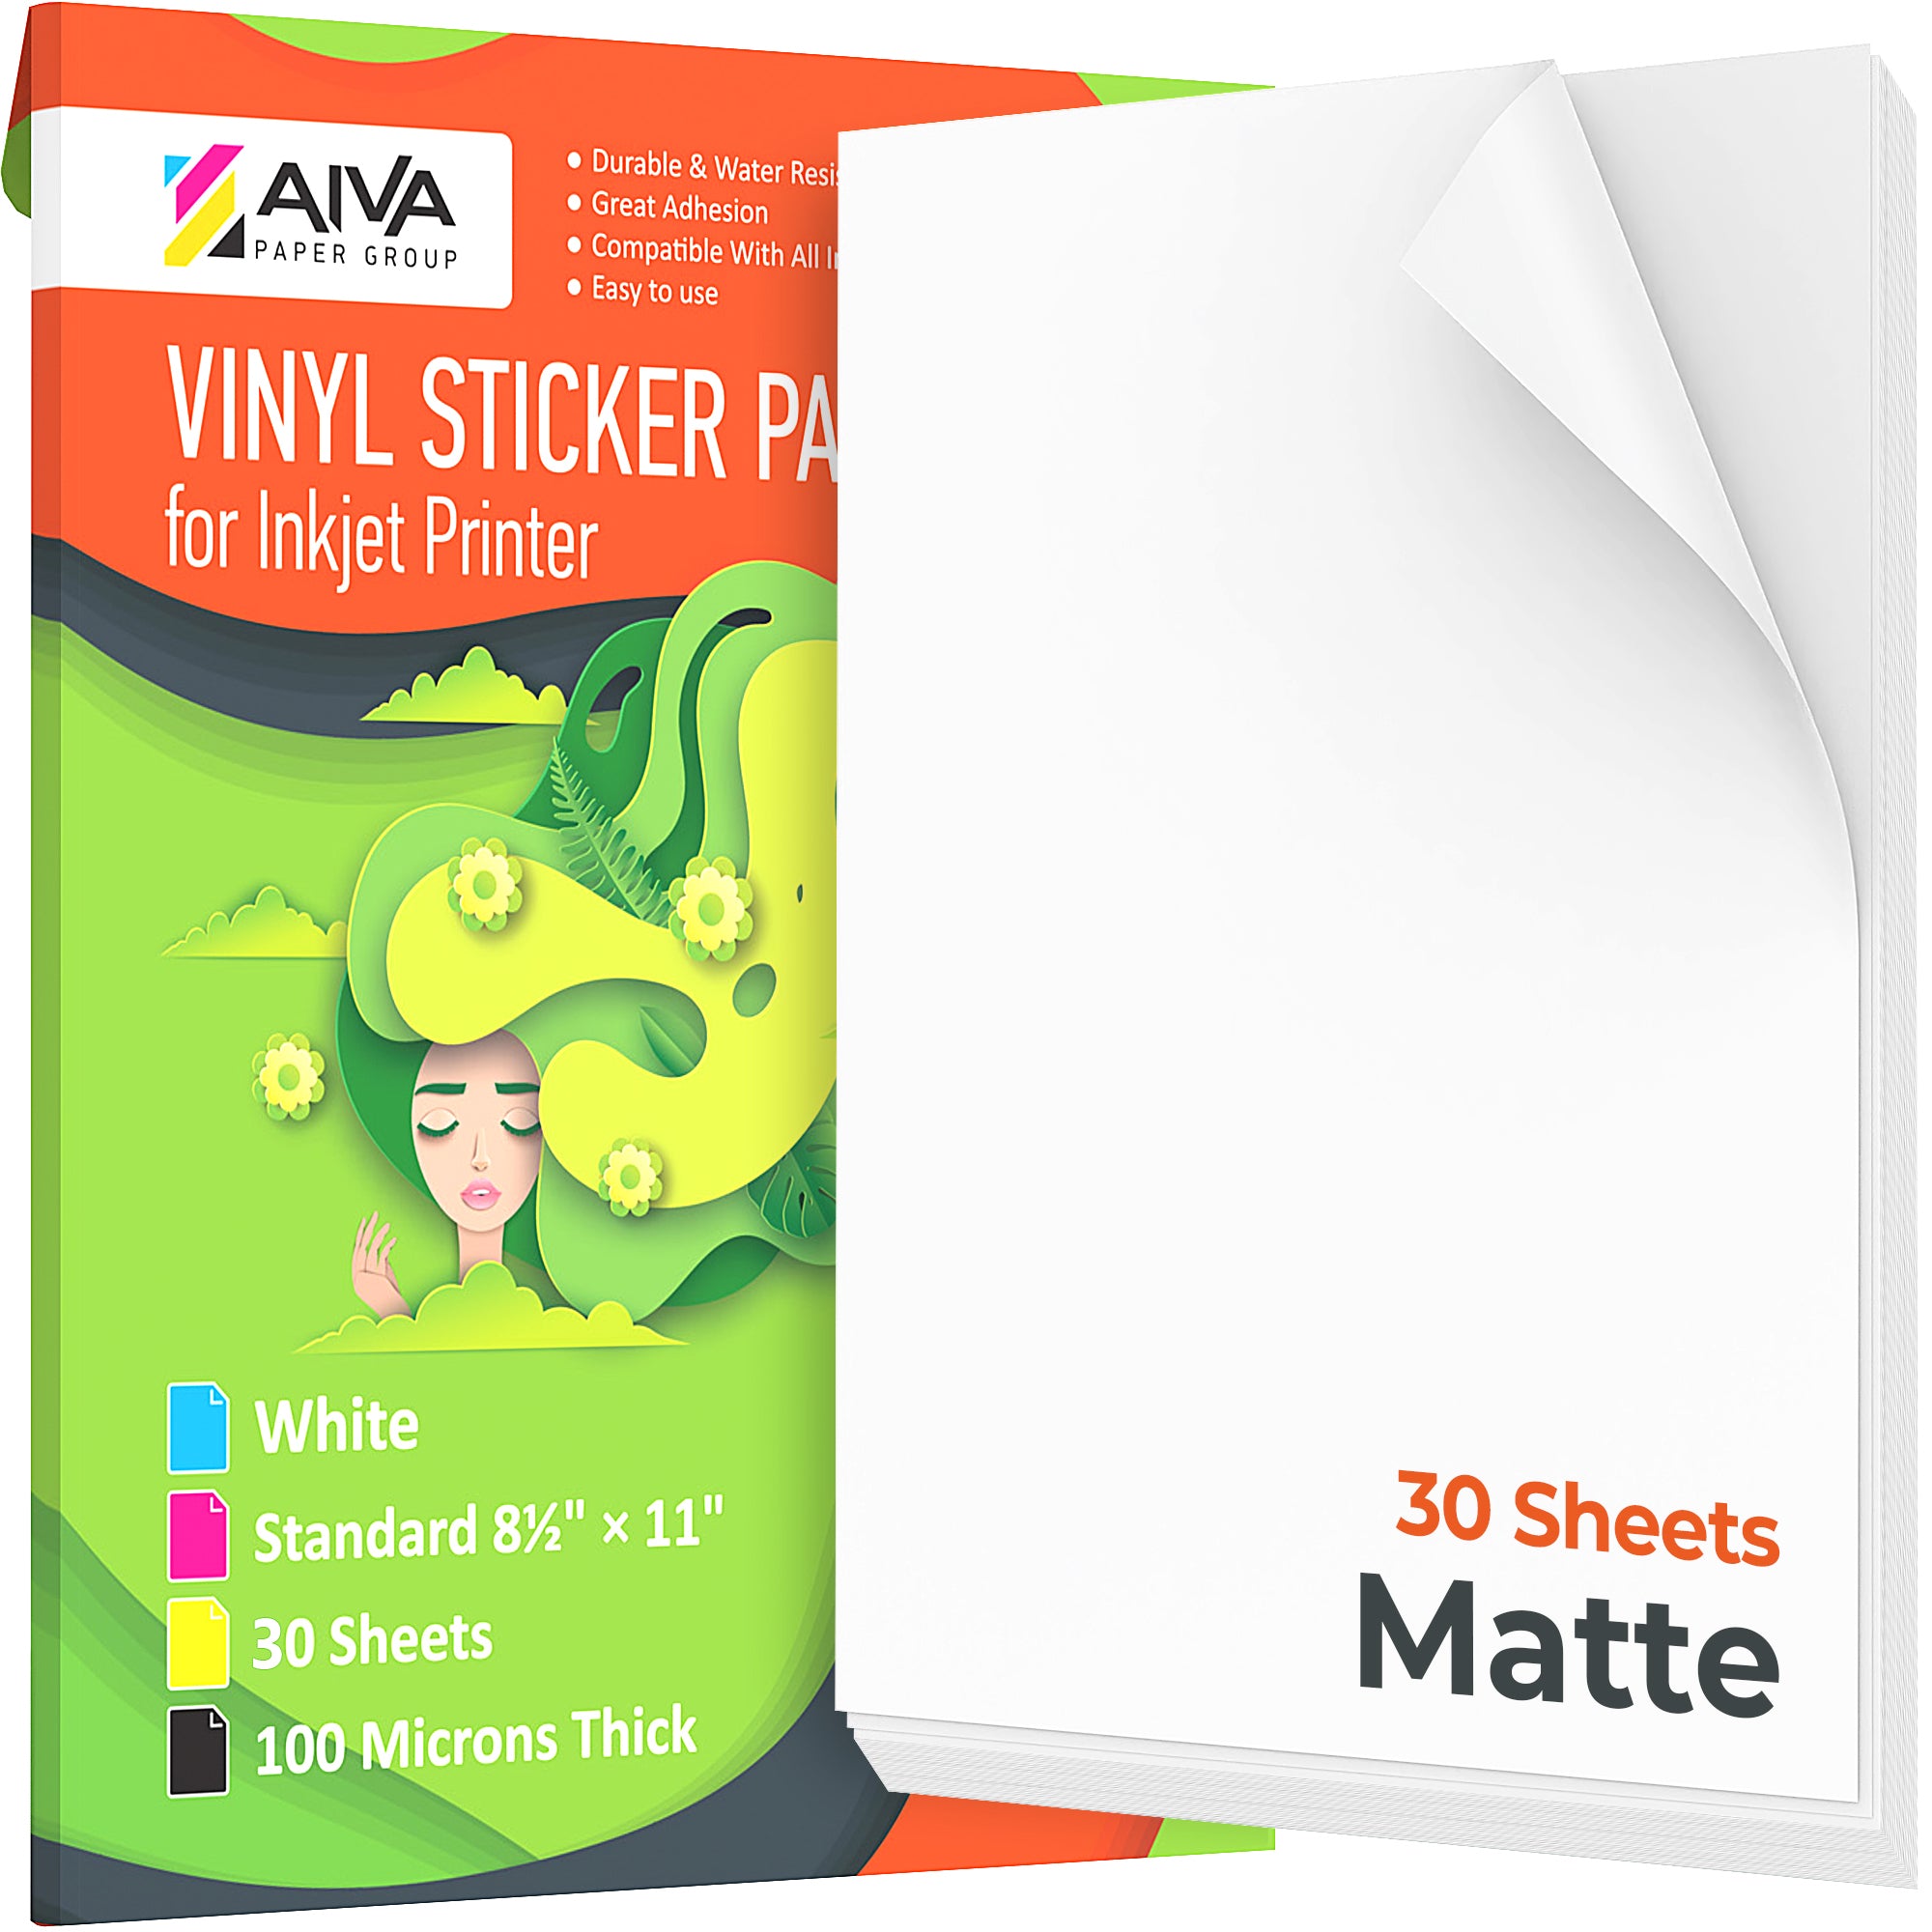 Printable Vinyl Sticker Paper Inkjet Matte 30 sheets | AIVA Paper Group ...